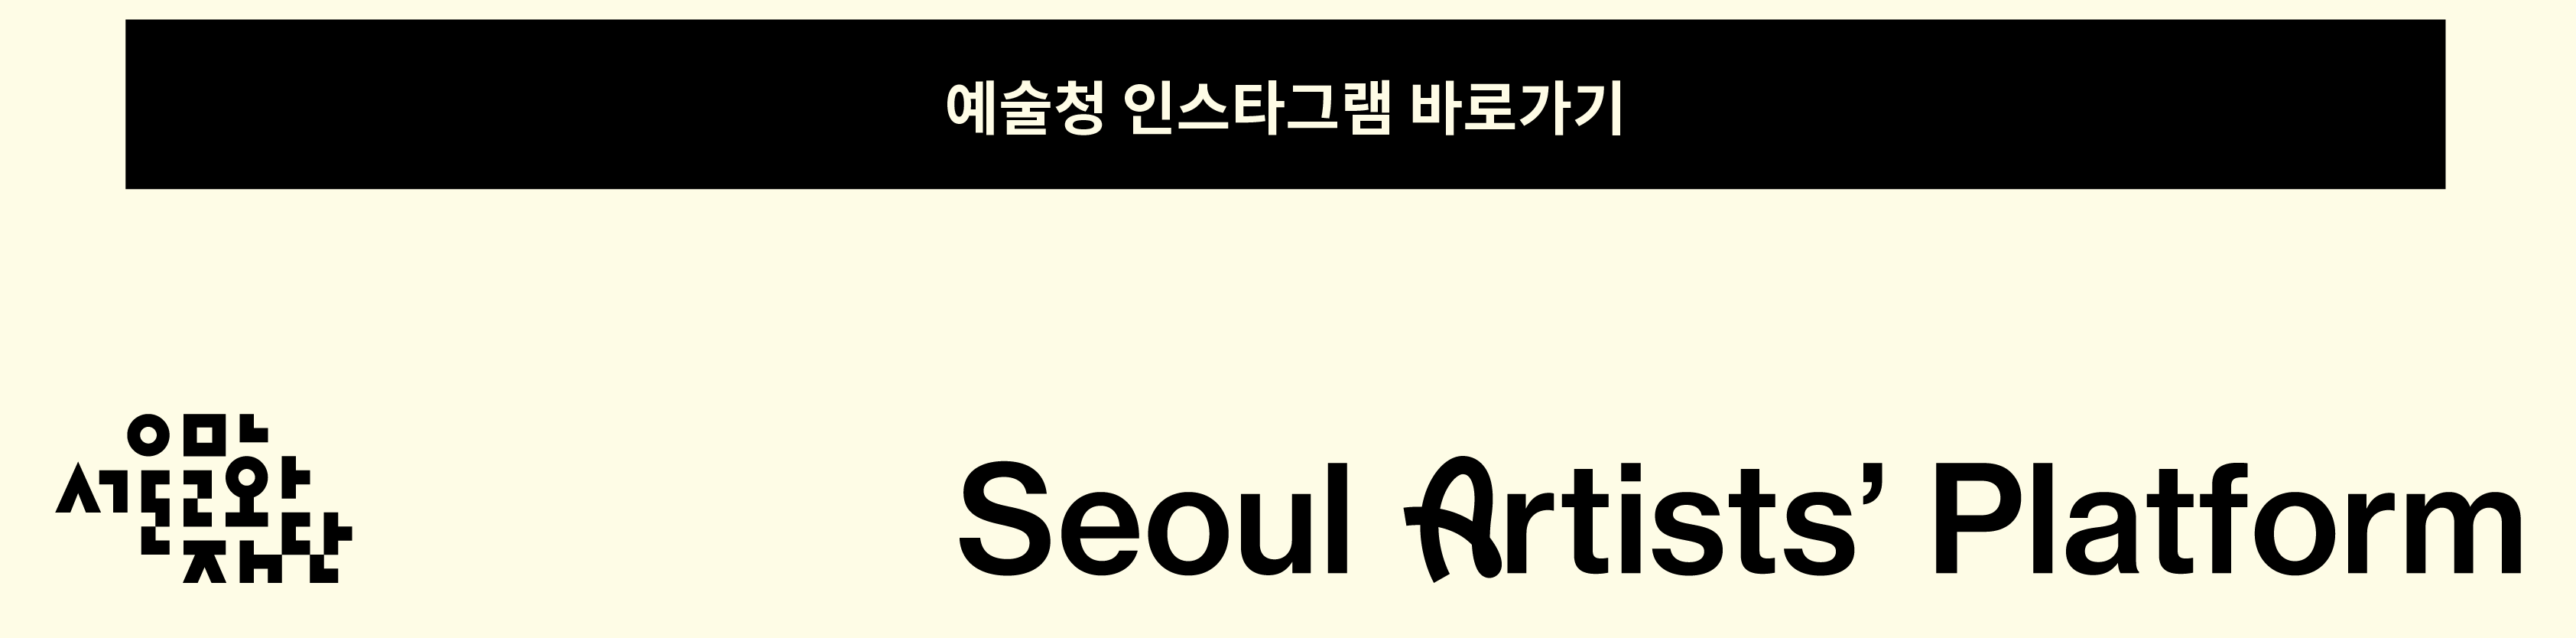 예술청 인스타그램 바로가기
Seoul Artists' Platform